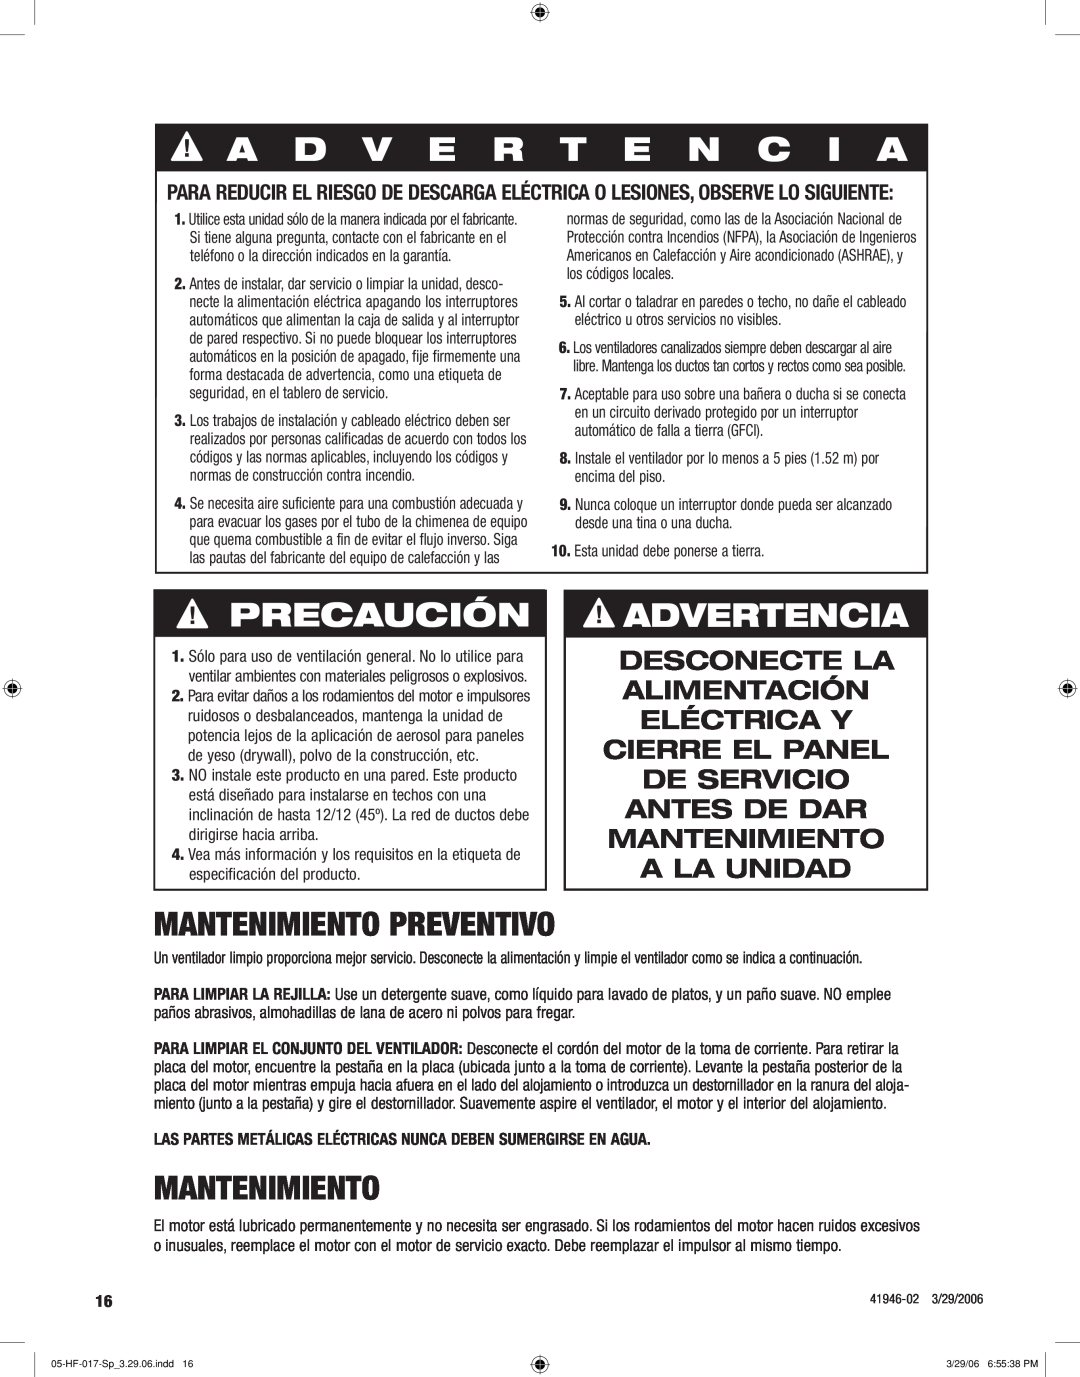 Hunter Fan 82004 manual A D V E R T E N C I A, Precaución, Advertencia, Mantenimiento preventivo 